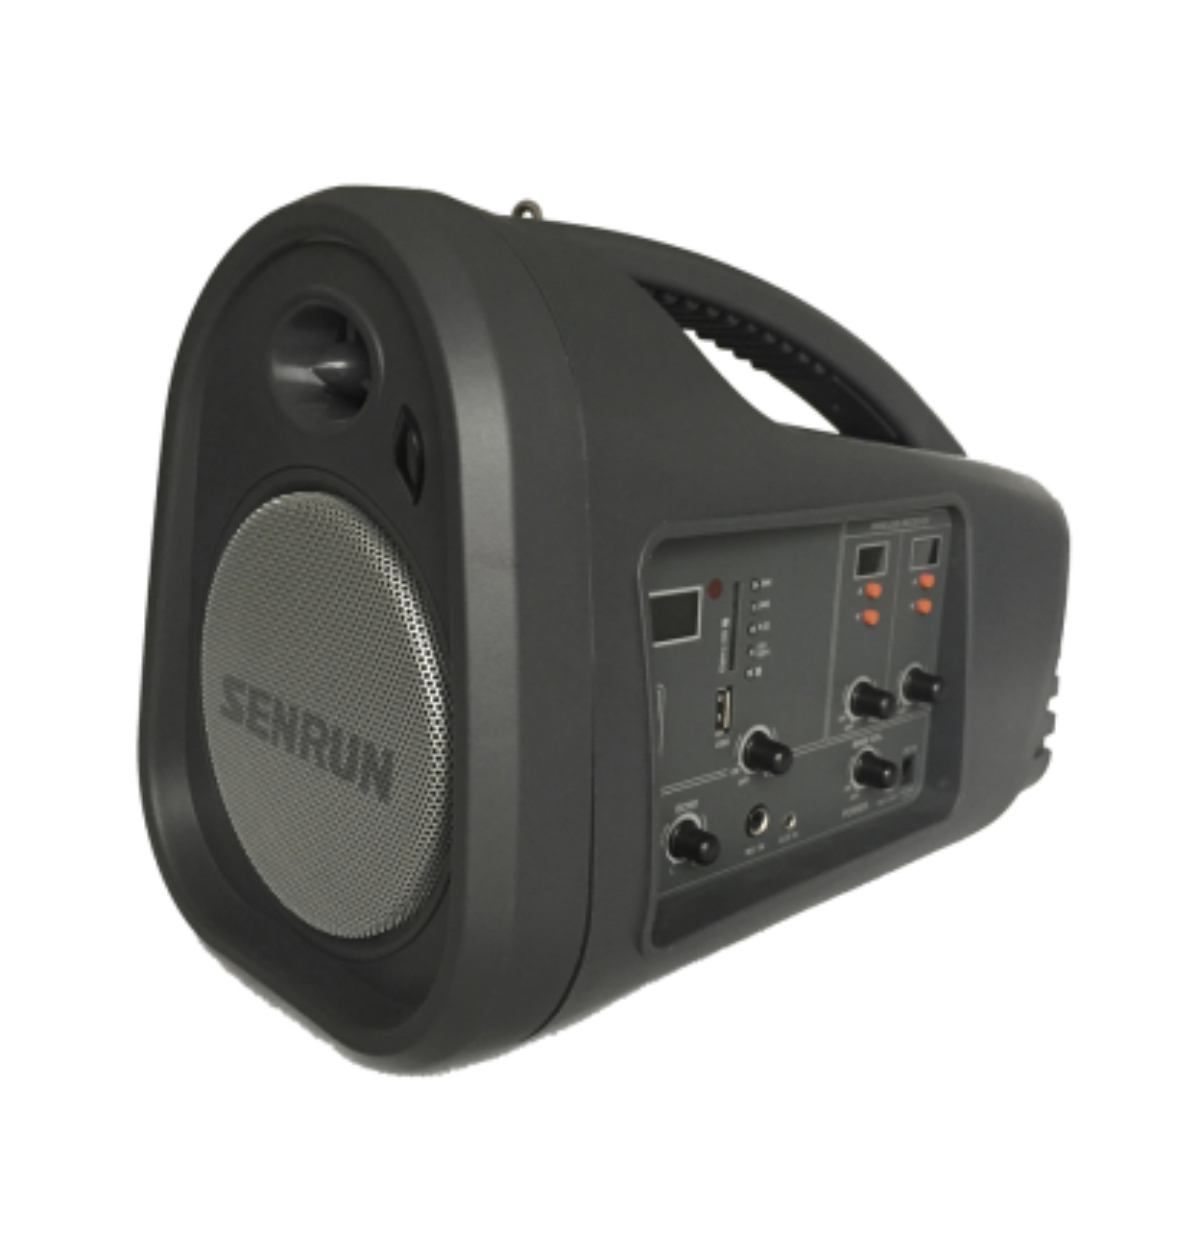 SENRUN EP 890 - Pack enceinte autonome avec Micro UHF, Lecteur